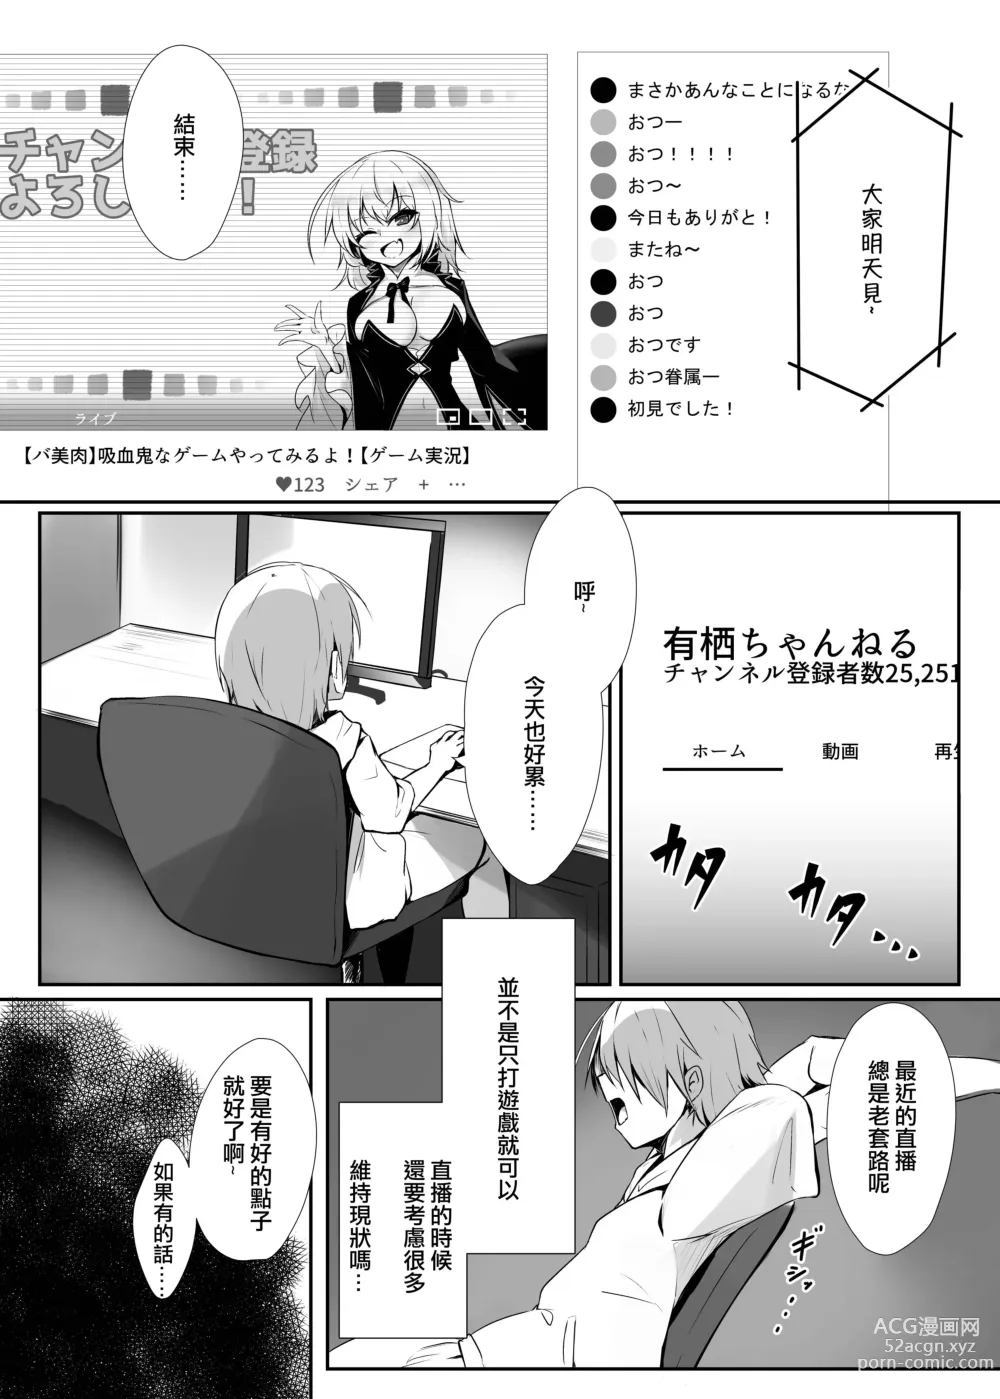 Page 2 of doujinshi Ribiniku Shita Vtuber ga Mesu ni Ochiru made